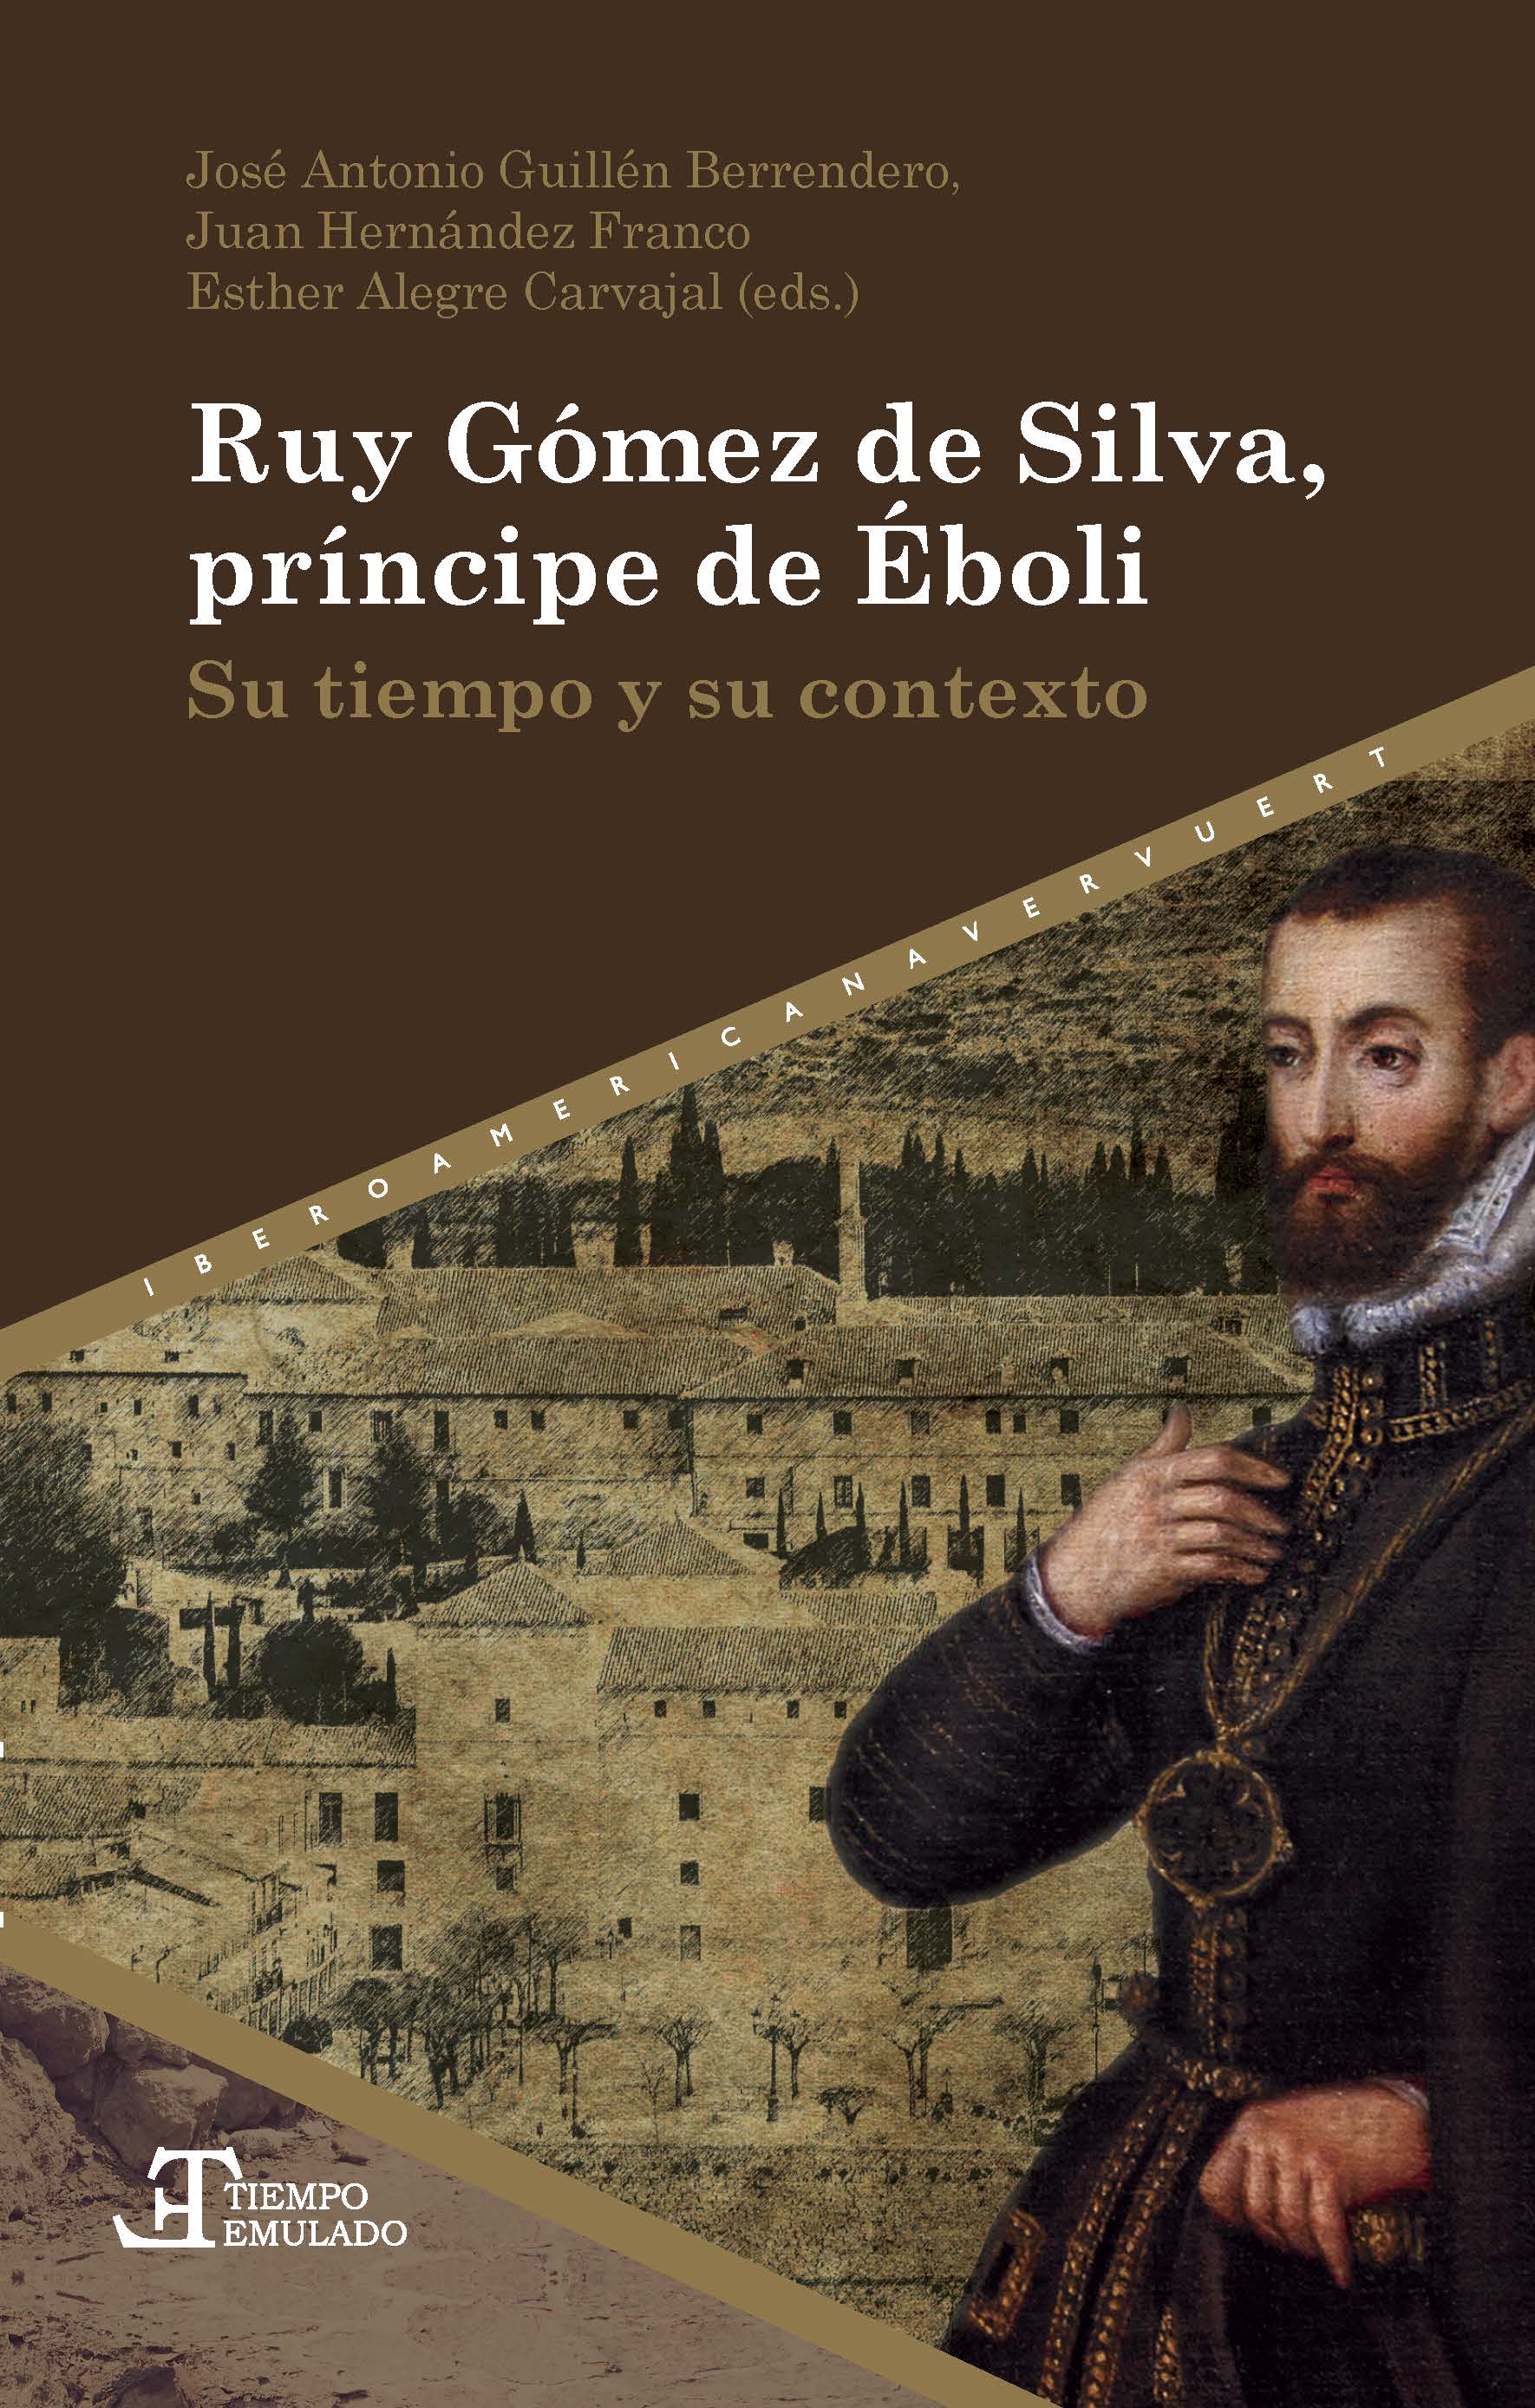 Imagen de portada del libro Ruy Gómez de Silva, príncipe de Éboli